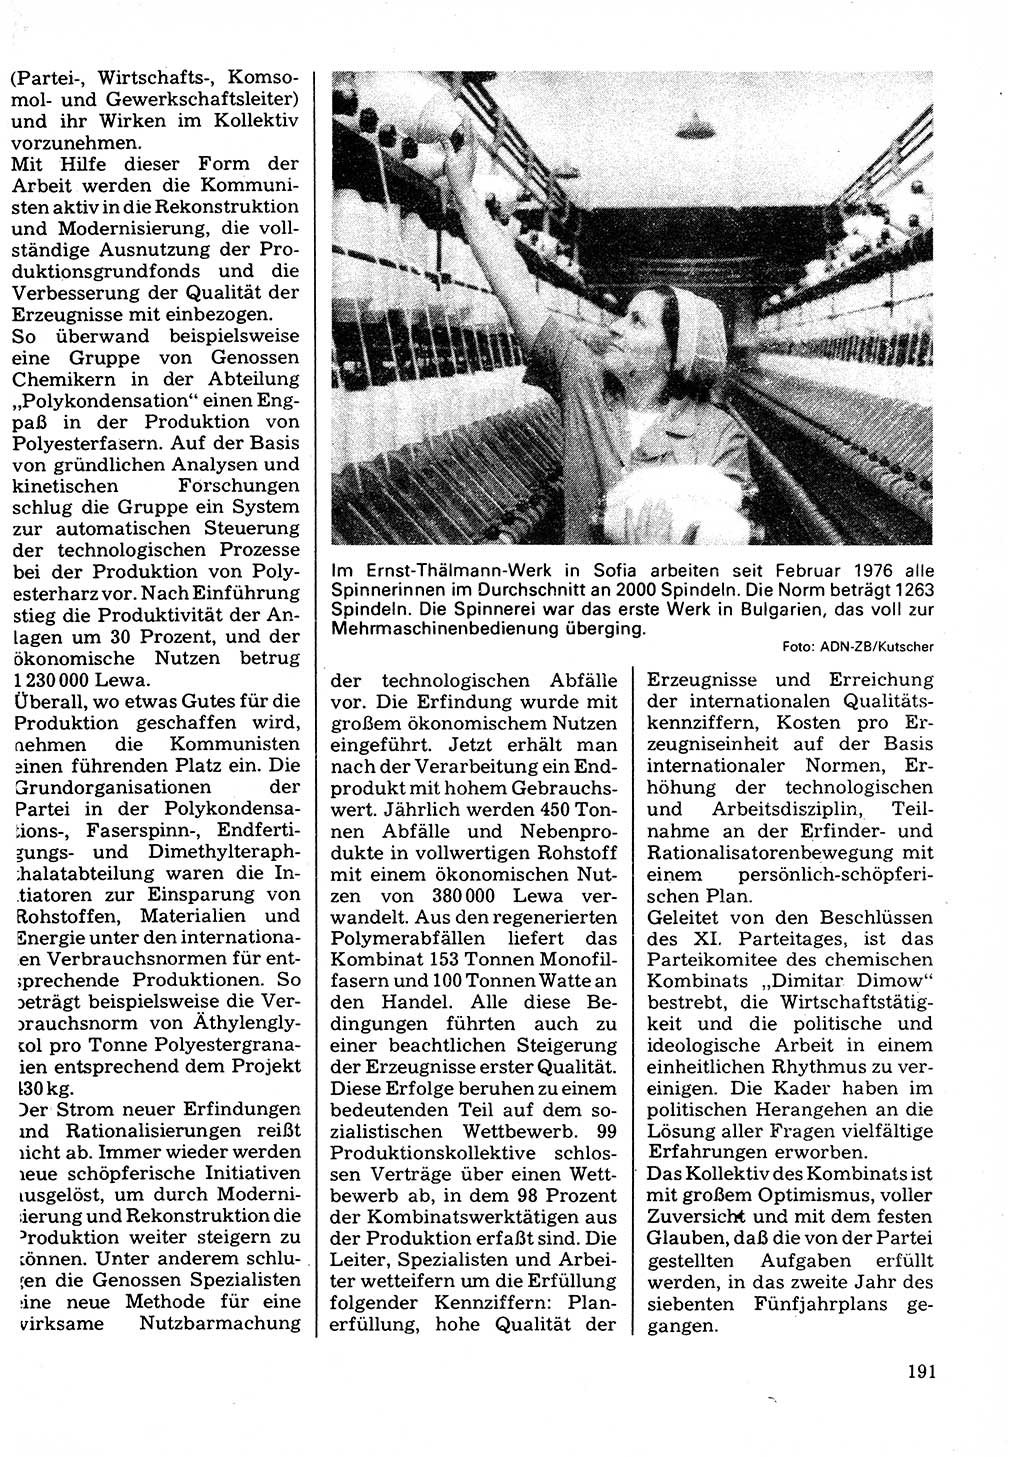 Neuer Weg (NW), Organ des Zentralkomitees (ZK) der SED (Sozialistische Einheitspartei Deutschlands) für Fragen des Parteilebens, 32. Jahrgang [Deutsche Demokratische Republik (DDR)] 1977, Seite 191 (NW ZK SED DDR 1977, S. 191)